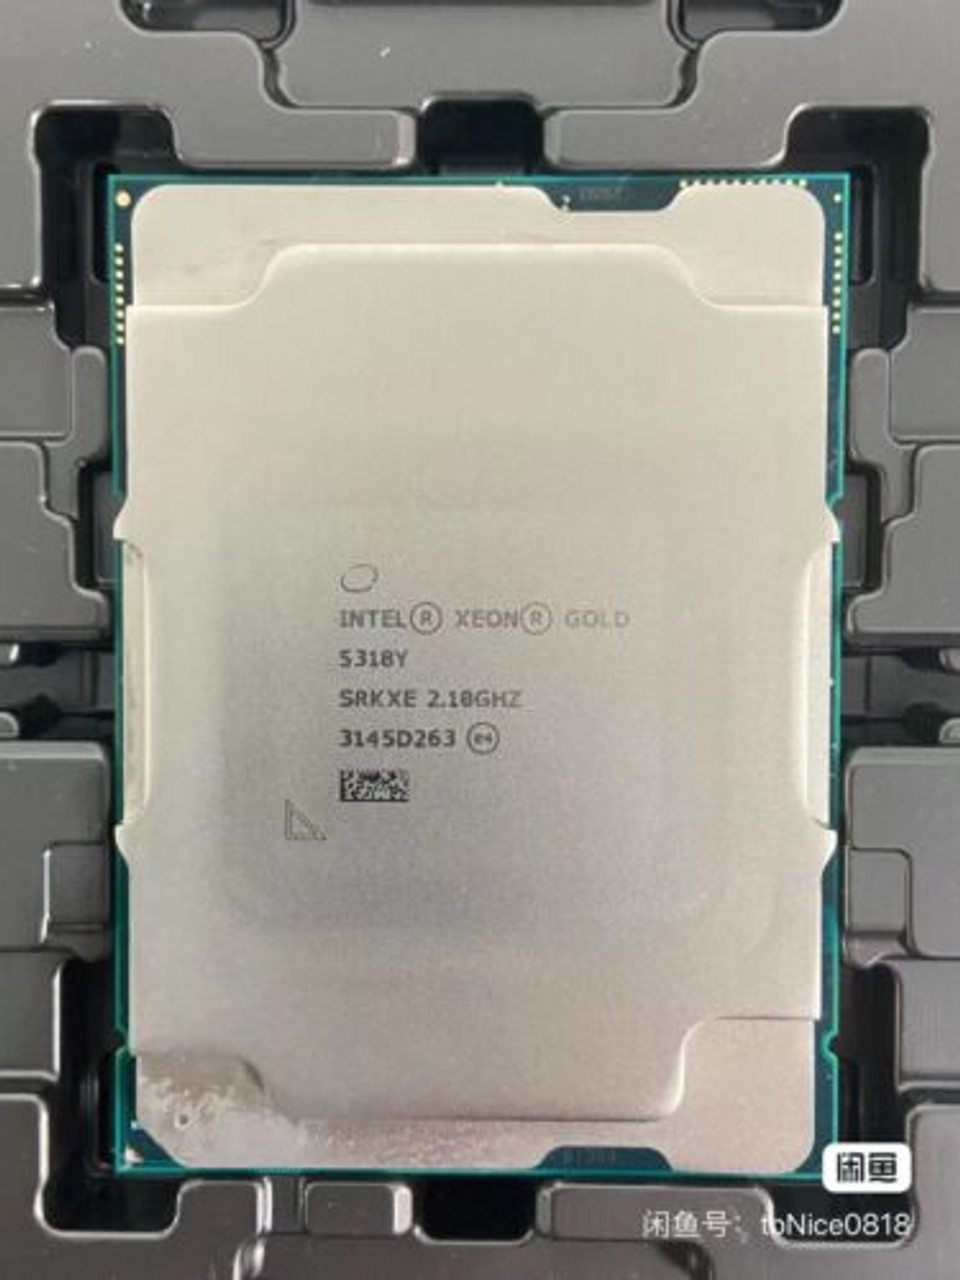 Intel Xeon Gold 5318Y 2.1Ghz 3.4Ghz 36Mbcache 165W Lga4189 Ddr4